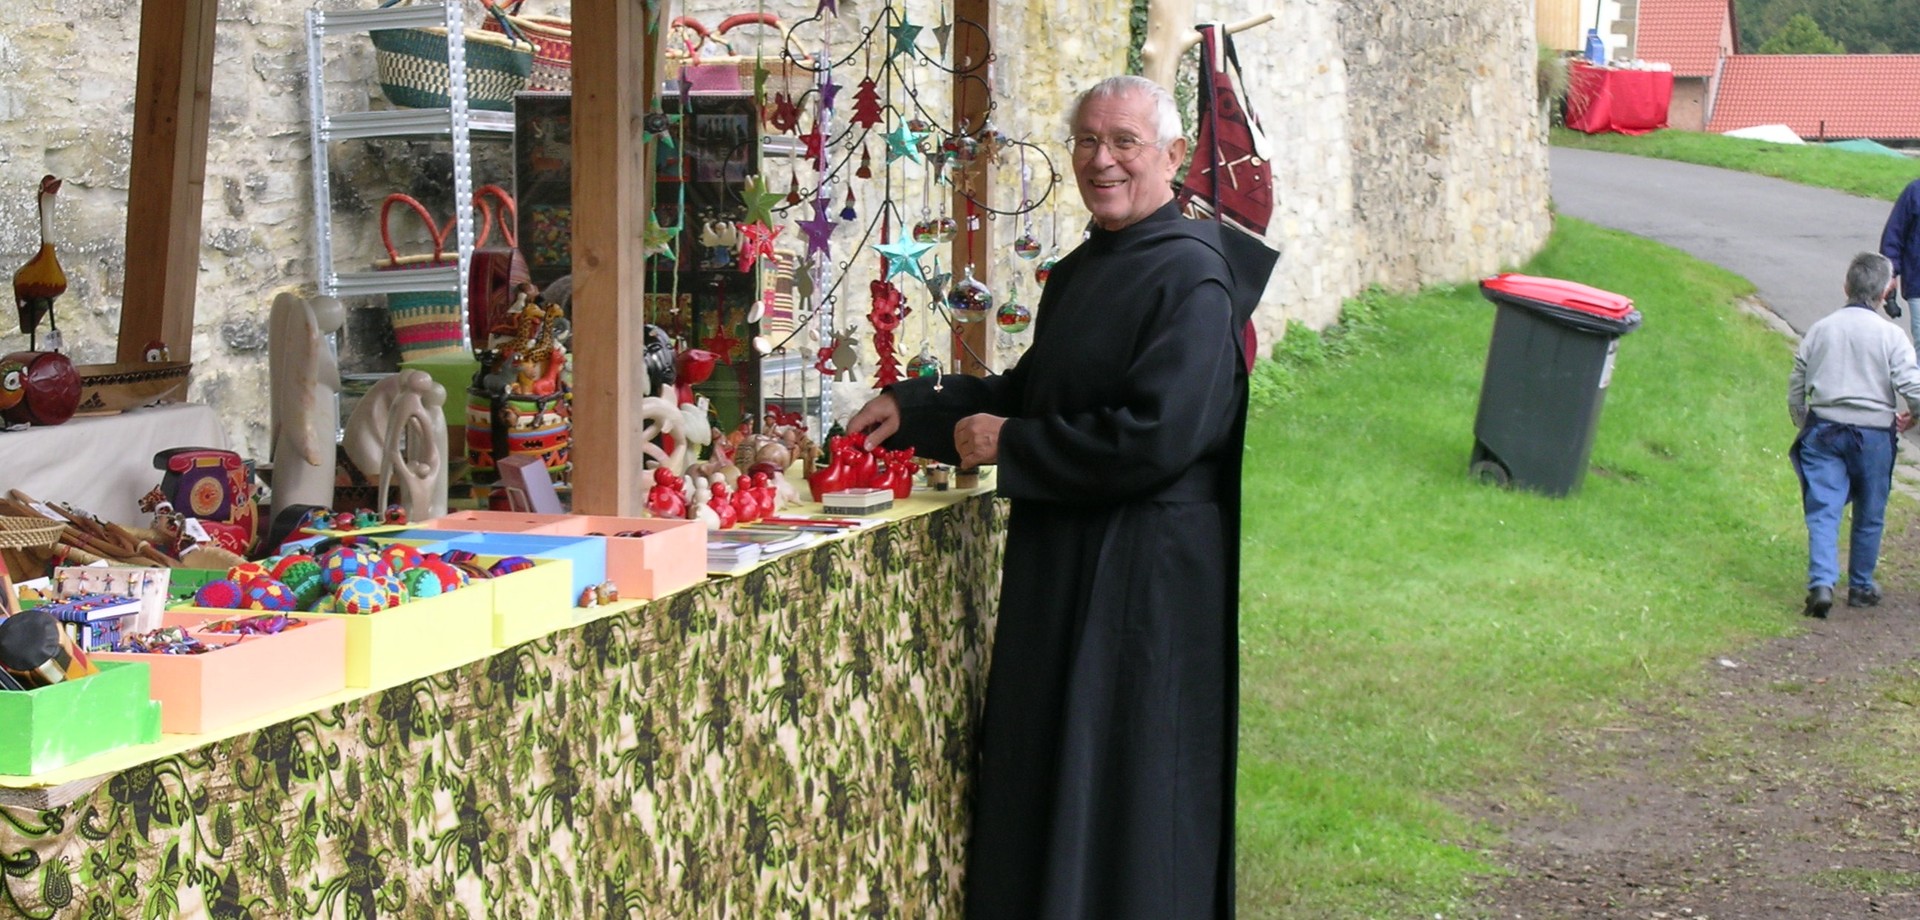 Auf dem Foto ist ein Mönch aus Münsterschwarzach zu sehen, welcher die Fair-Handel-Produkte präsentiert.

Foto: LWL/Fisch